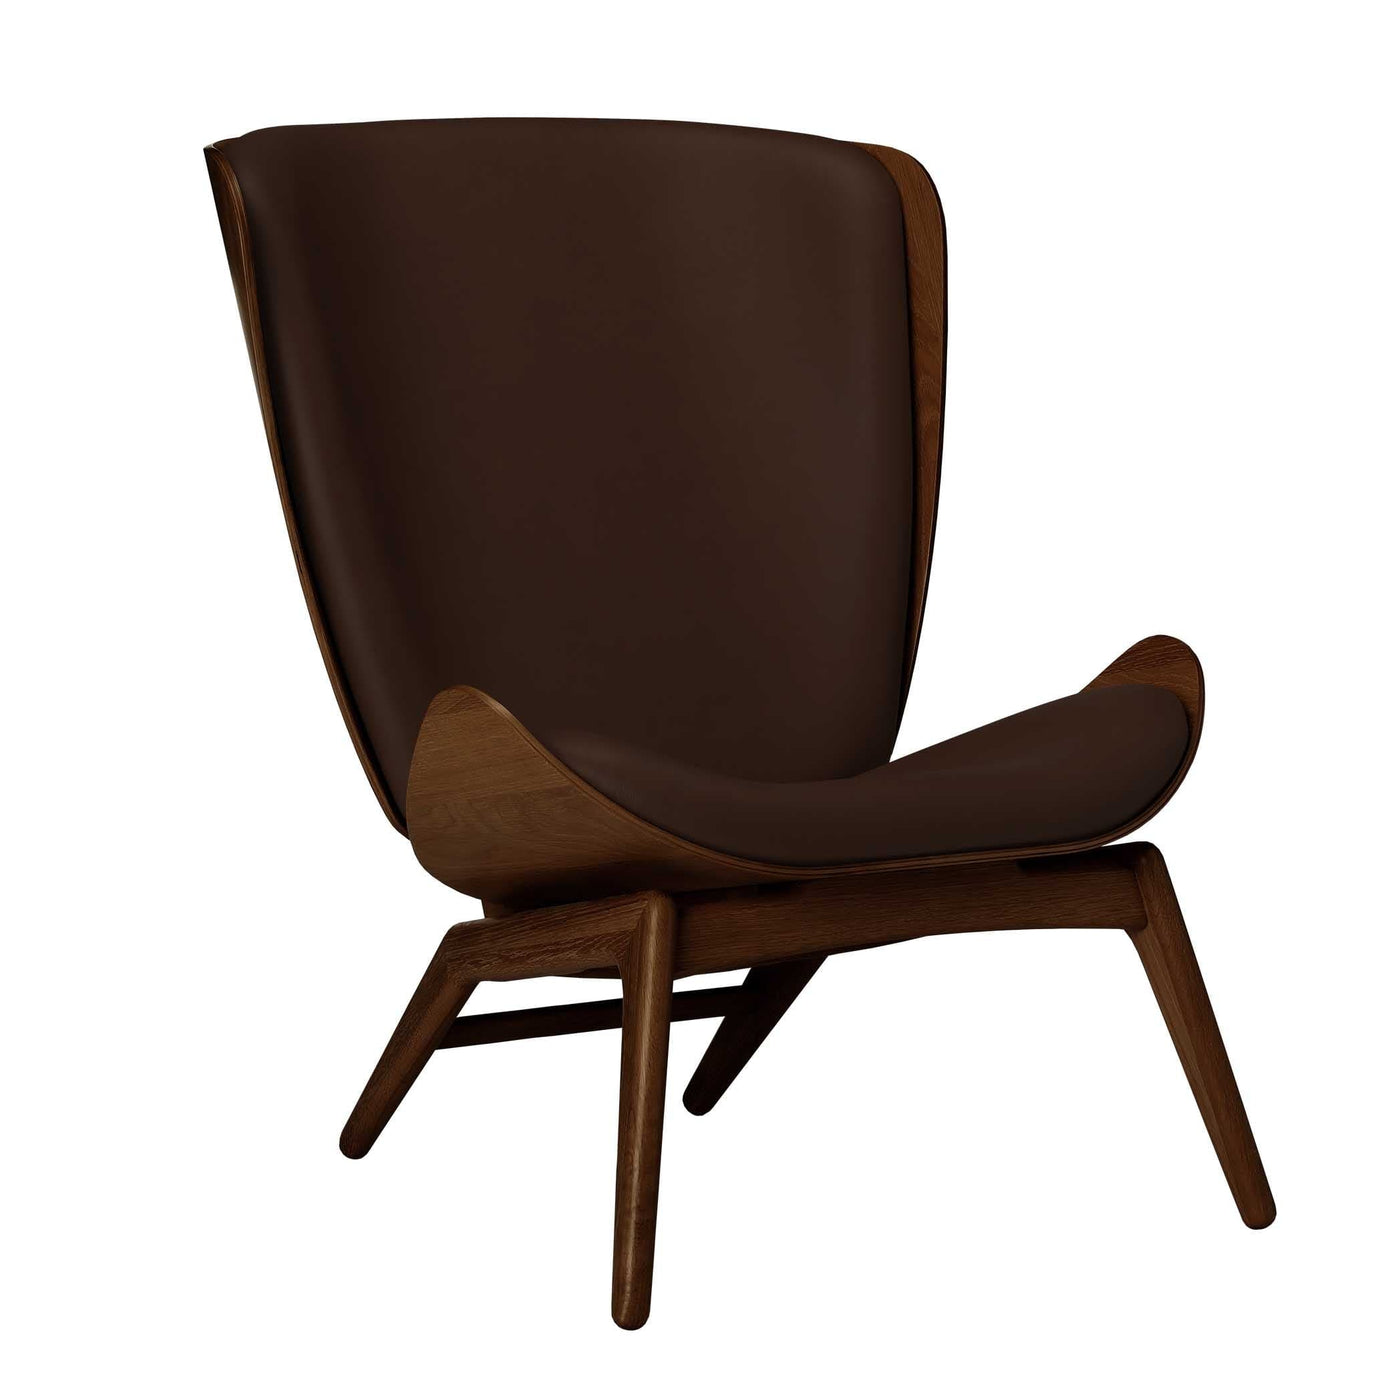 Umage The reader, fauteuil avec dossier haut, en bois et polyester, cuir brun, chêne foncé